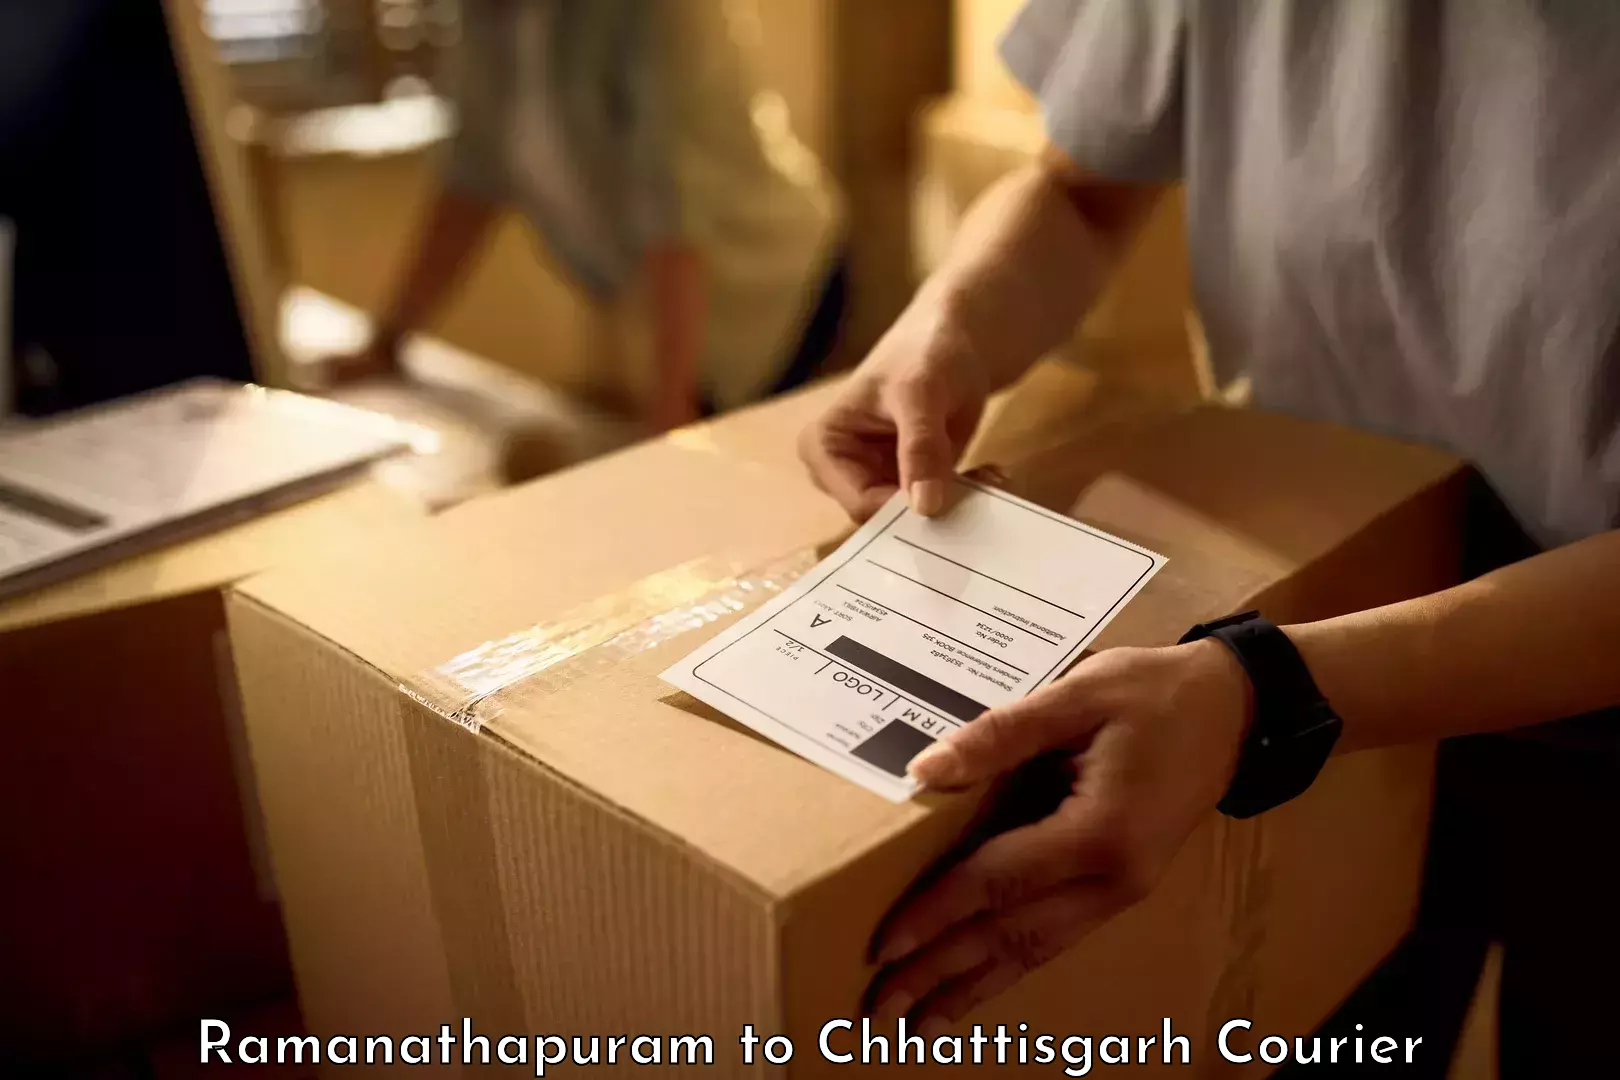 Luggage dispatch service Ramanathapuram to Pakhanjur